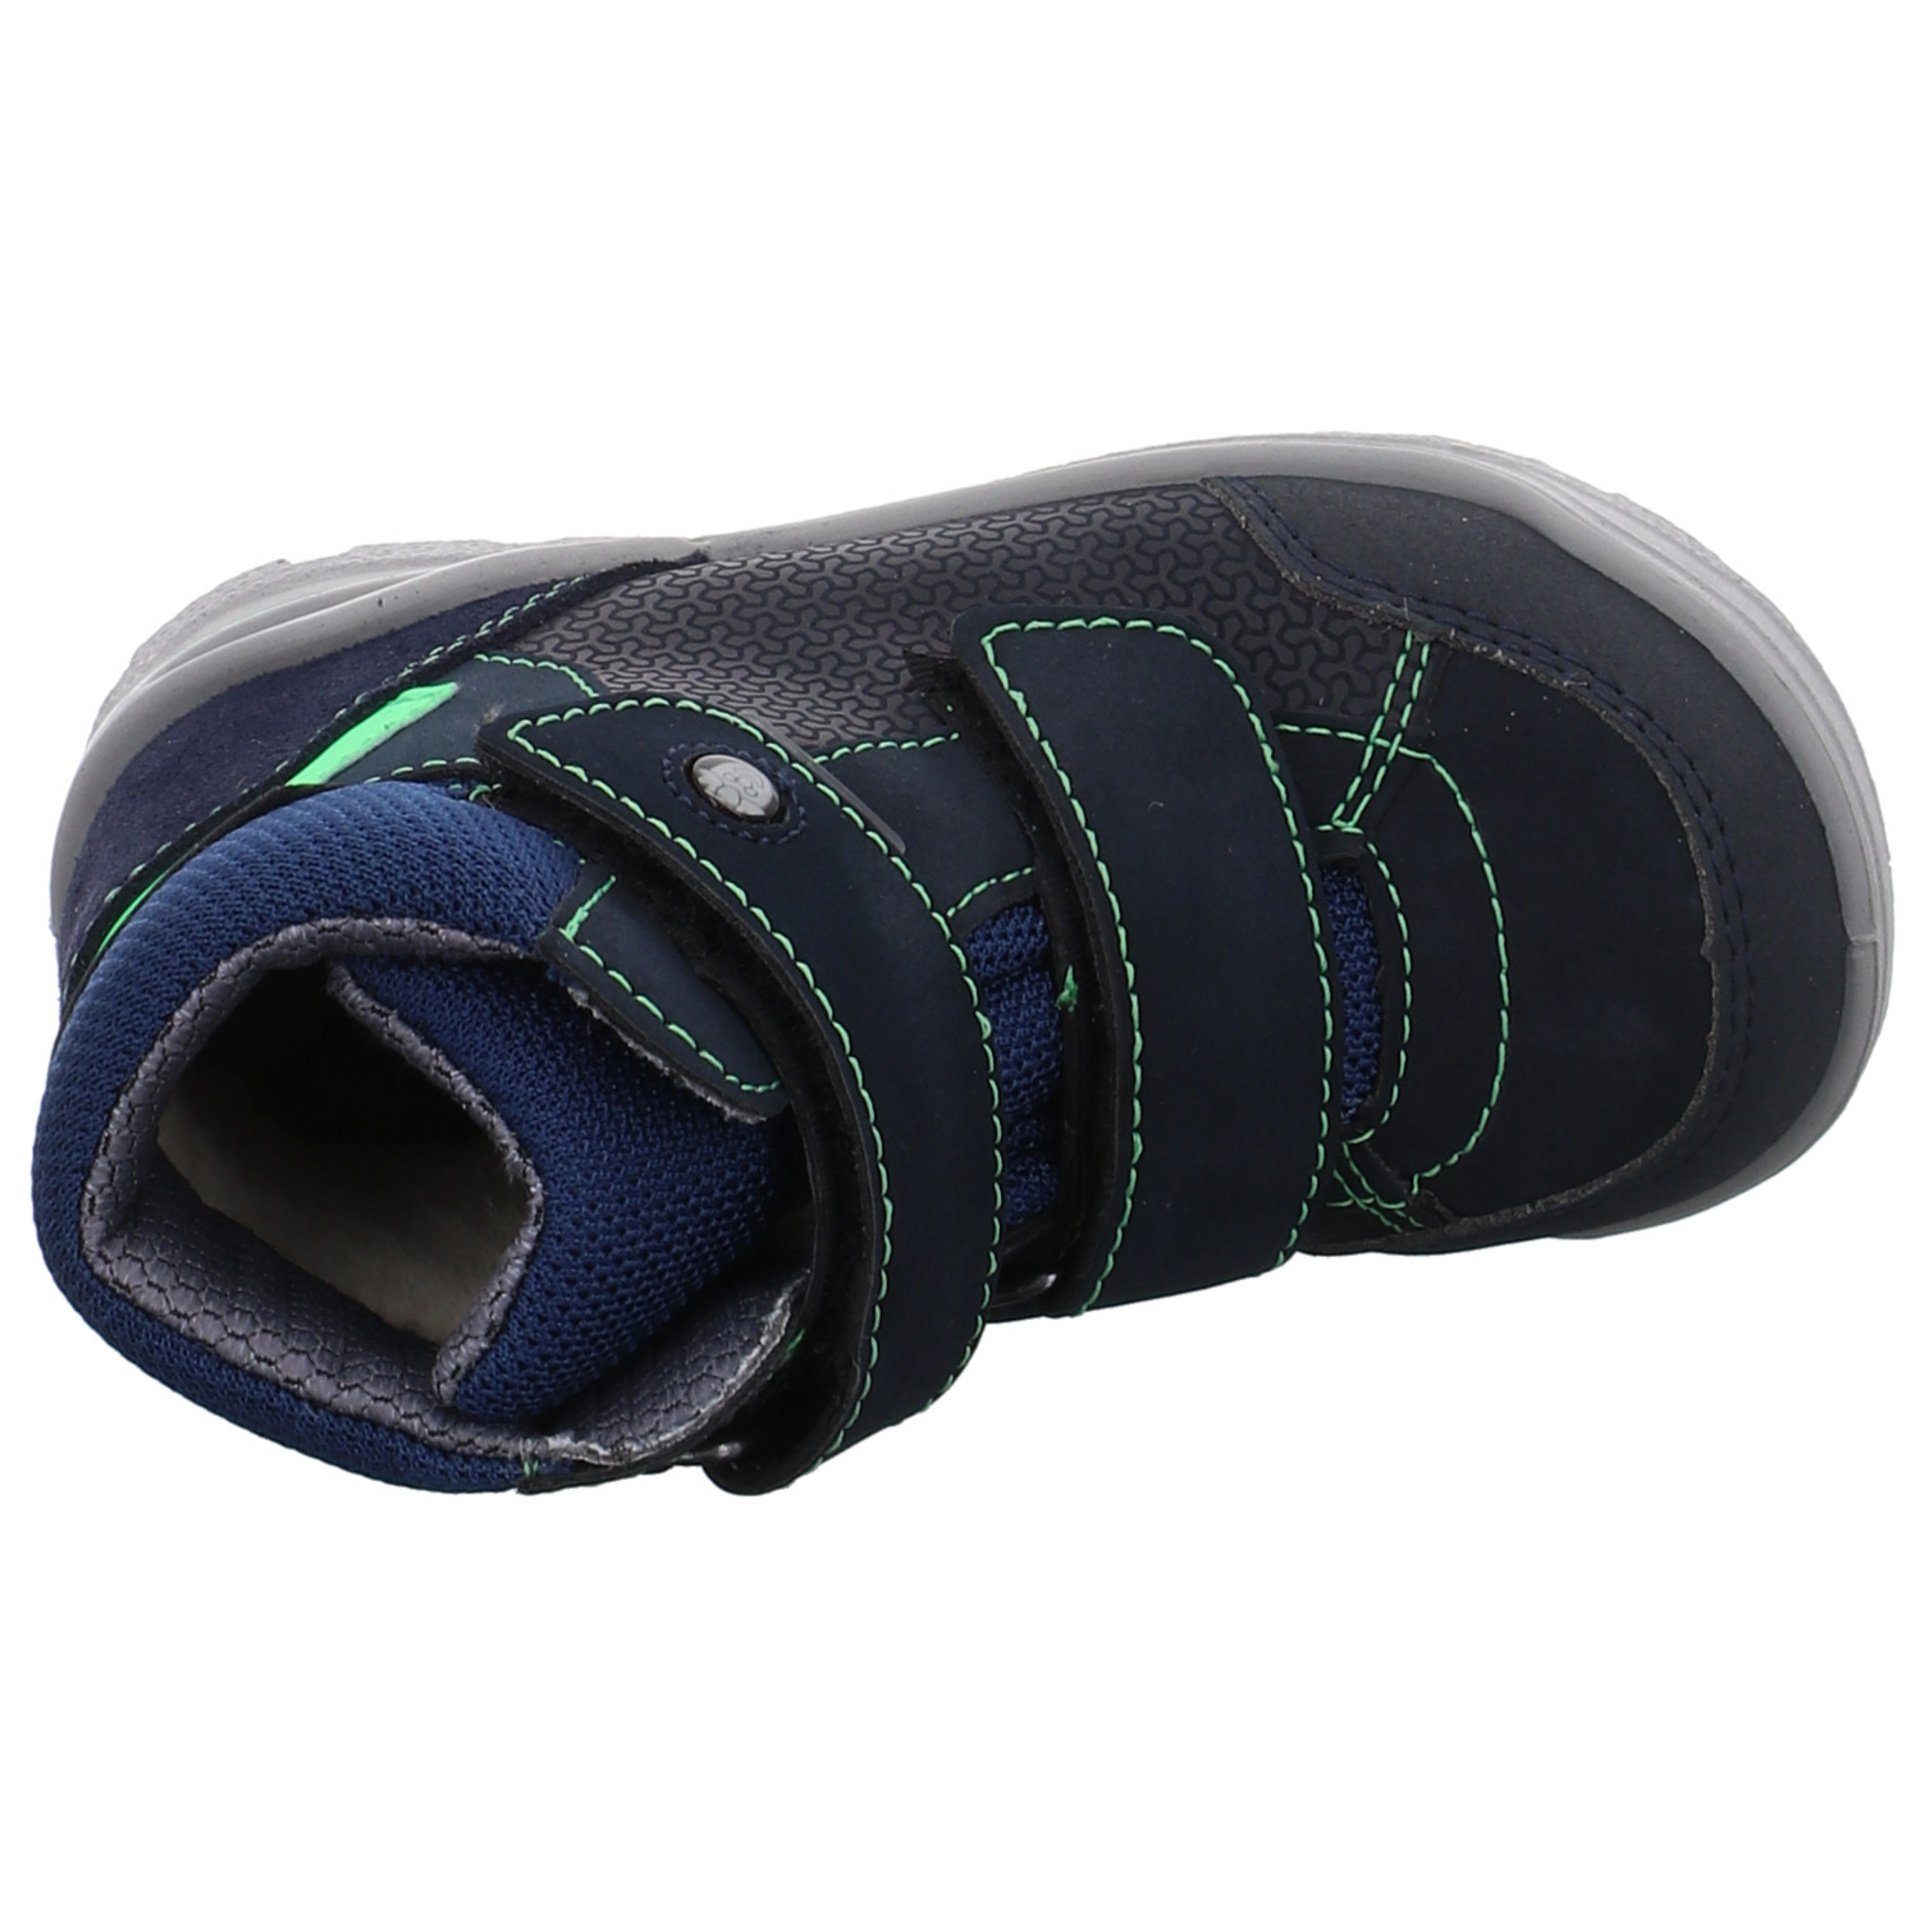 Ricosta Finn Boots Leder-/Textilkombination Leder-/Textilkombination sonst uni Kombi blau Winterboots